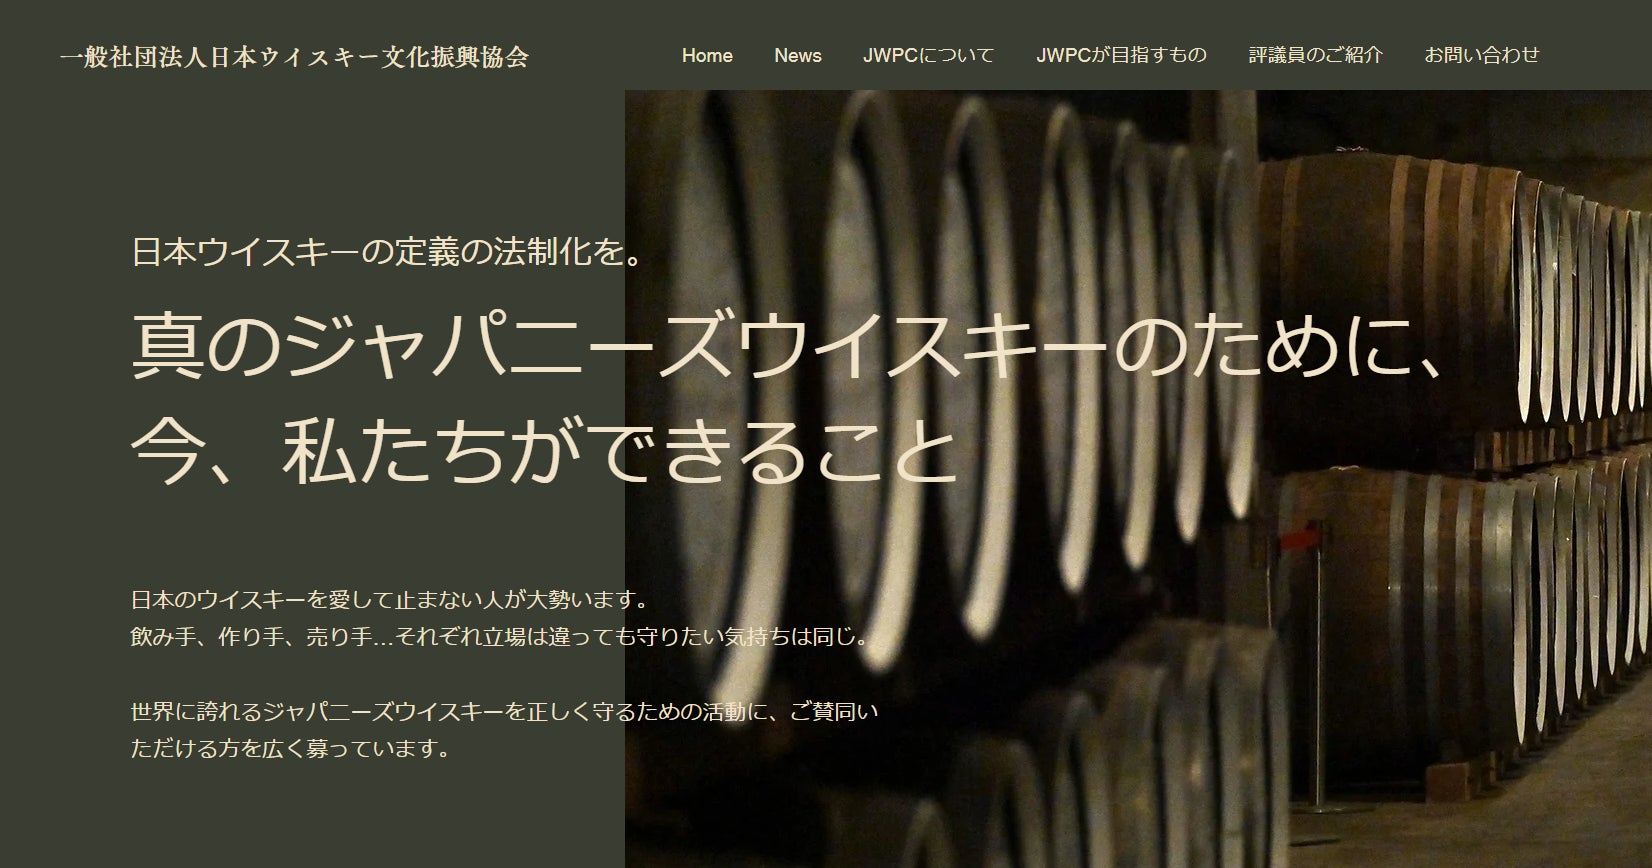 一般社団法人日本ウイスキー文化振興協会(JWPC)　設立のお知らせジャパニーズウイスキー定義の法制化を目指す